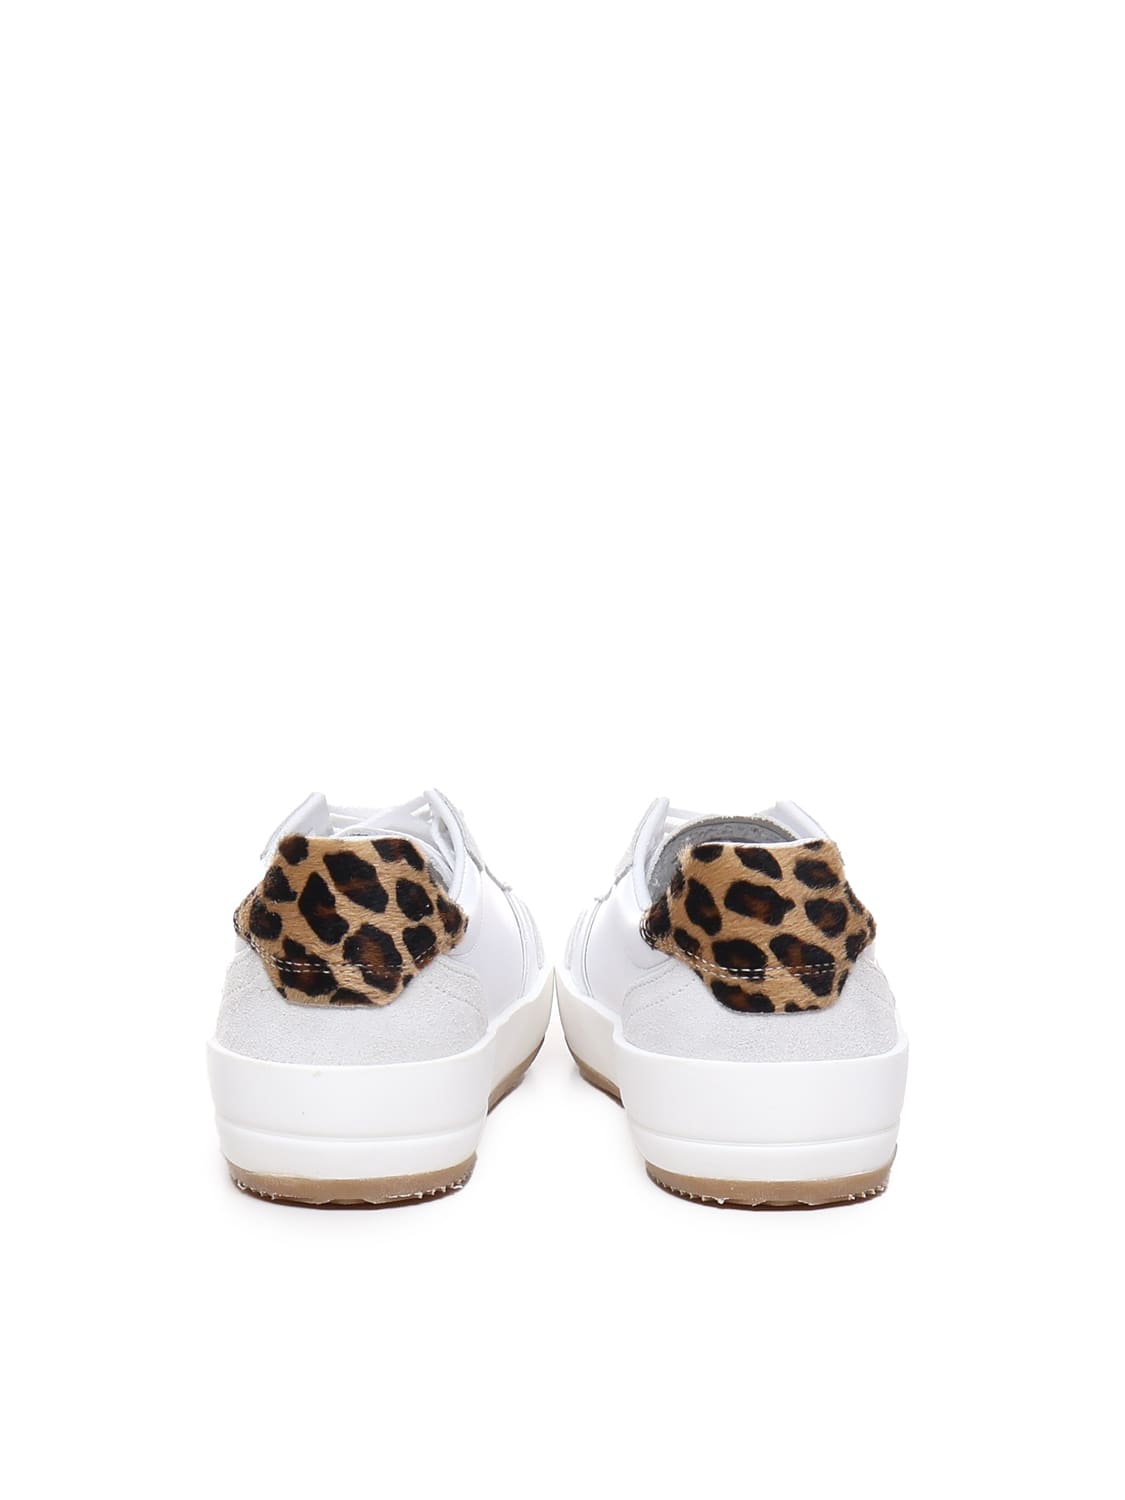 Shop Philippe Model Nice Low Sneaker In White, Leopard